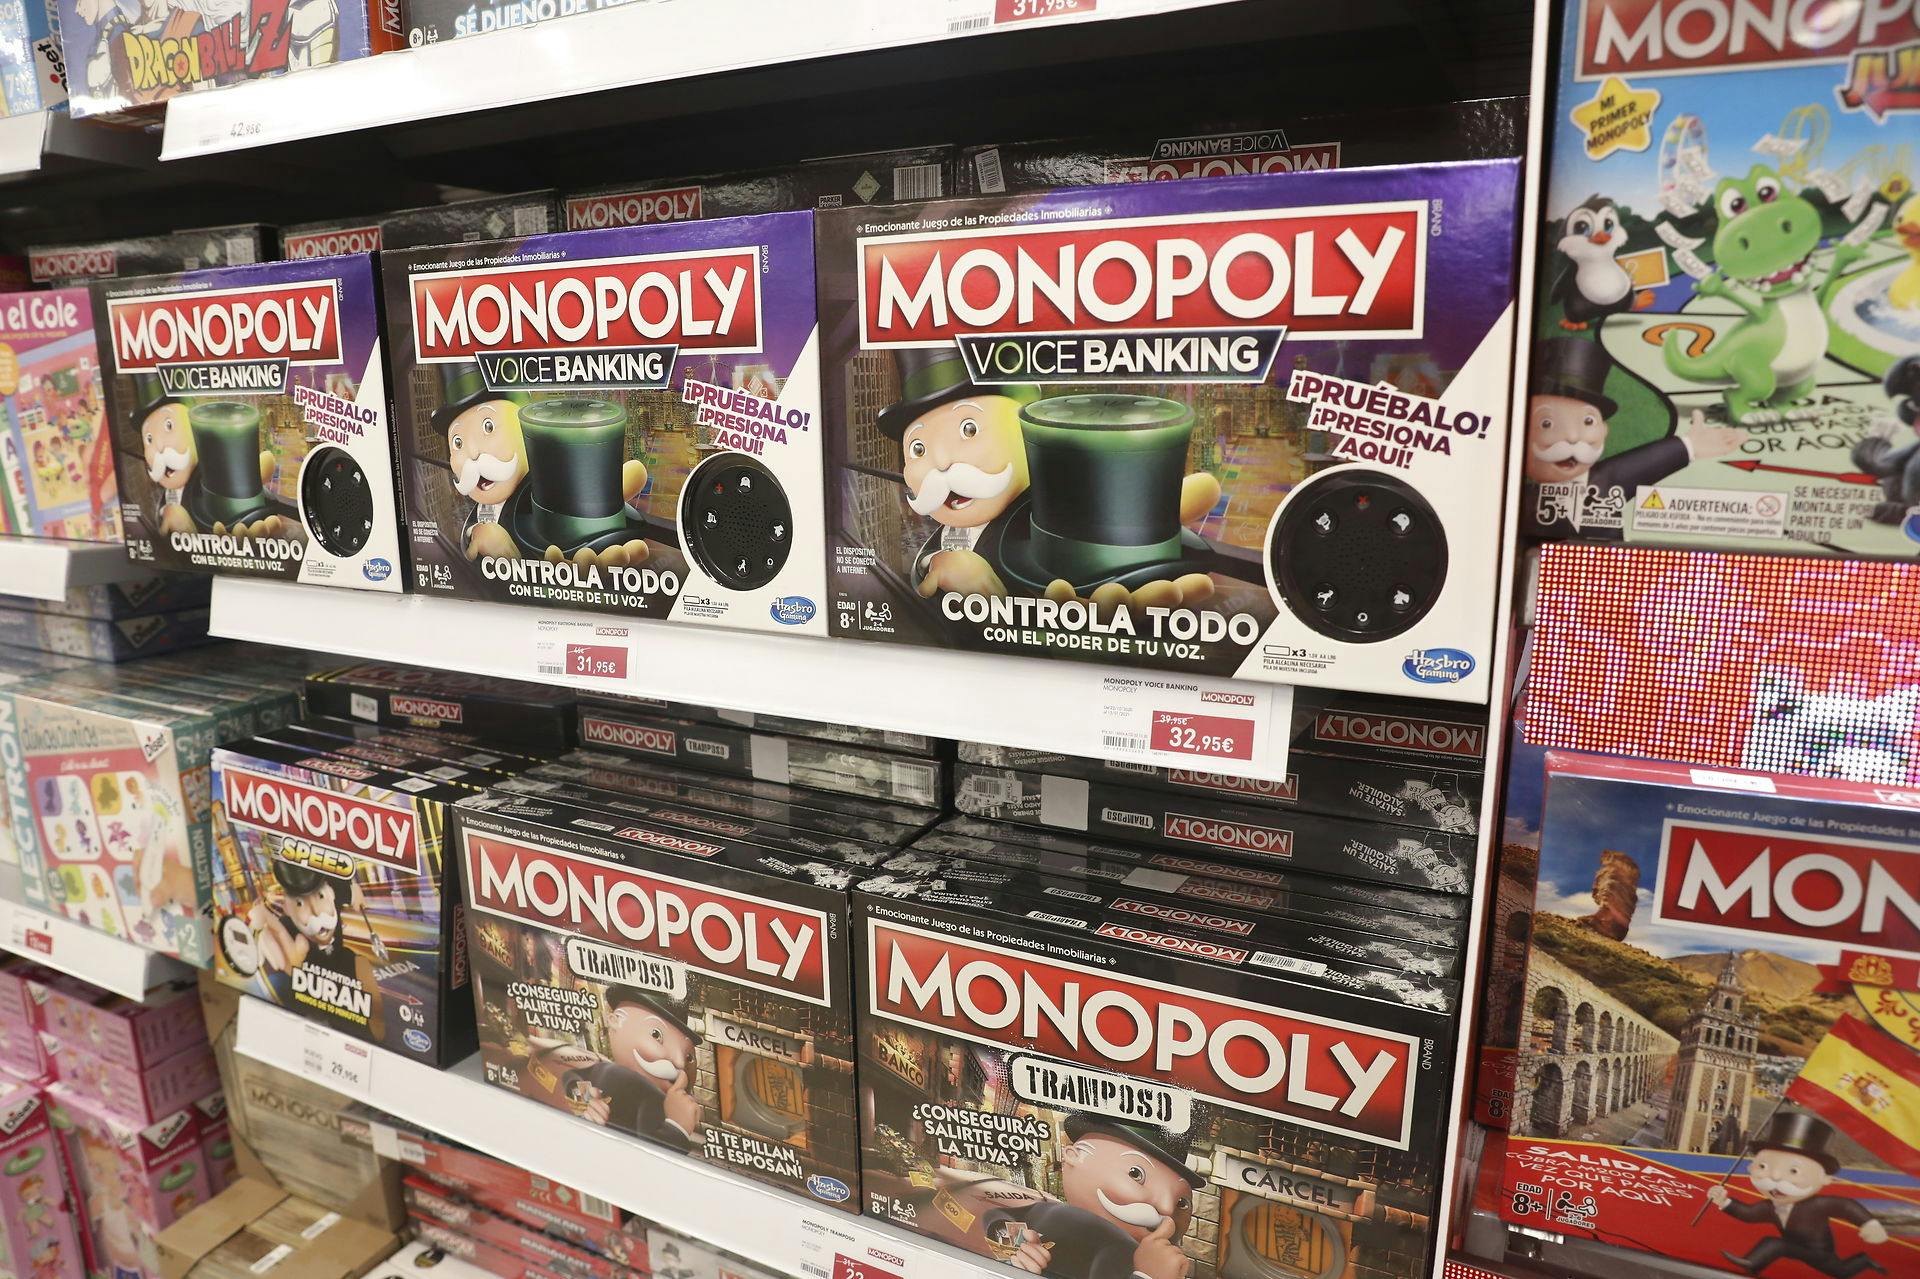 Monopoly-brætspil gik helt galt: Endte at affyre pistol mod familiemedlemmer | SE HØR